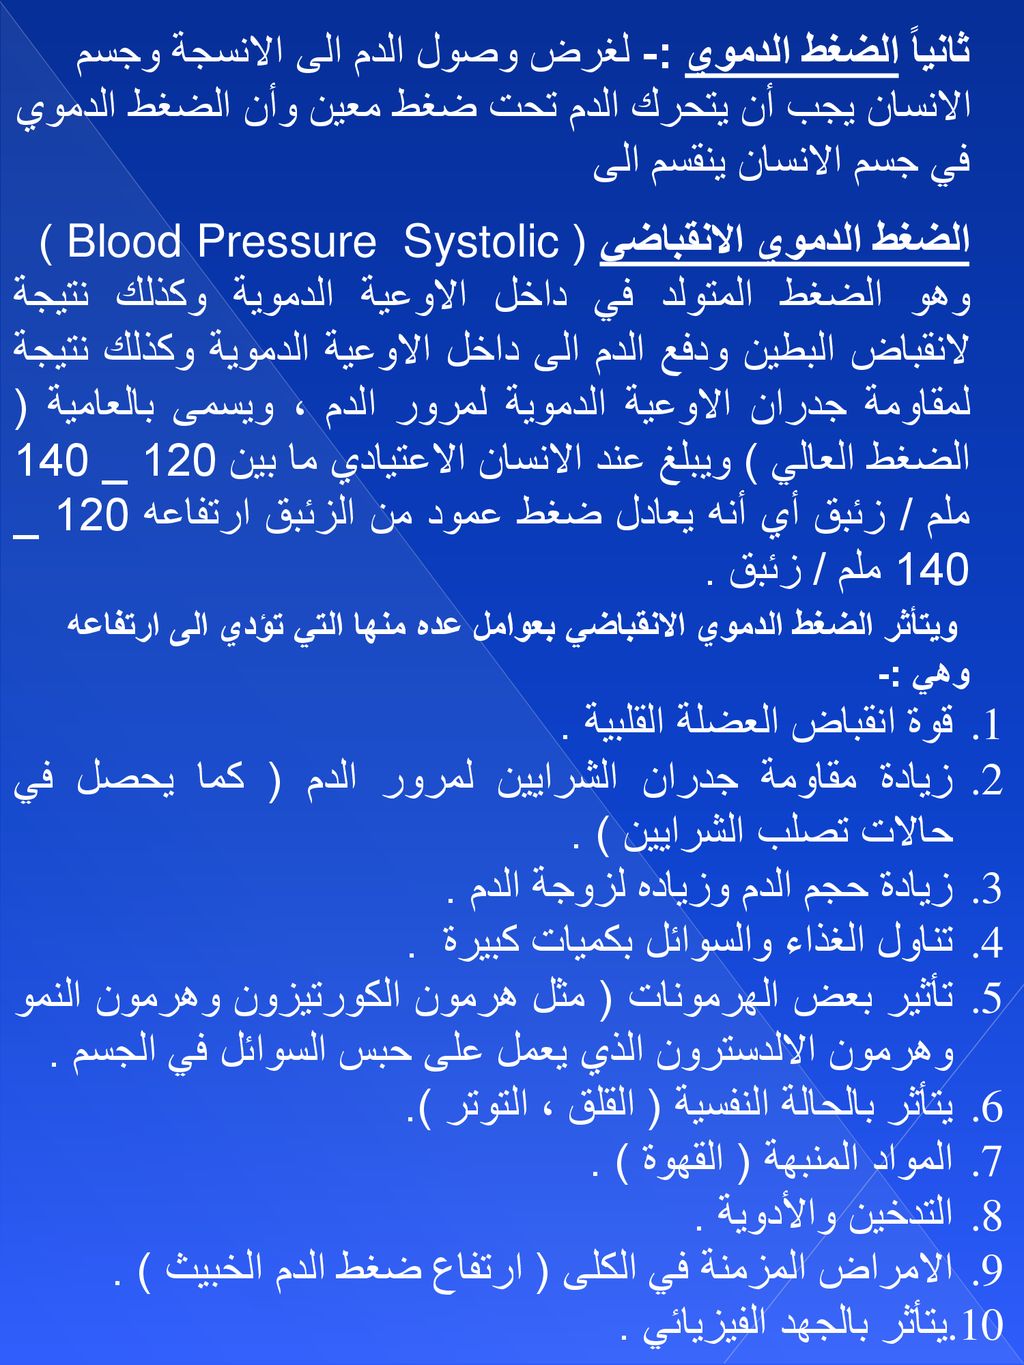 ثانياً الضغط الدموي :- لغرض وصول الدم الى الانسجة وجسم الانسان يجب أن يتحرك الدم تحت ضغط معين وأن الضغط الدموي في جسم الانسان ينقسم الى